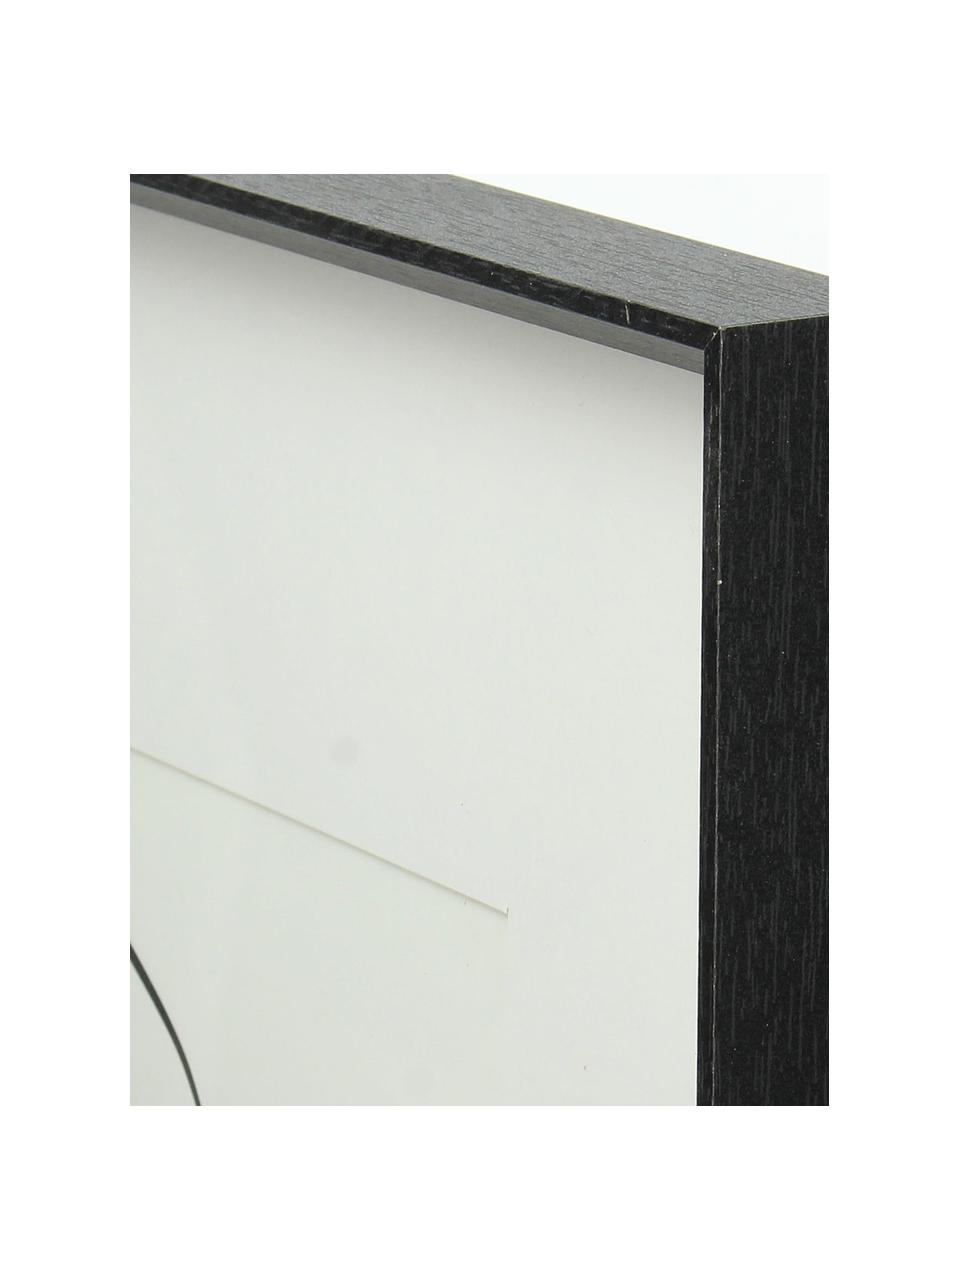 Bildrahmen Apatite, Holz, beschichtet, Schwarz, 40 x 50 cm